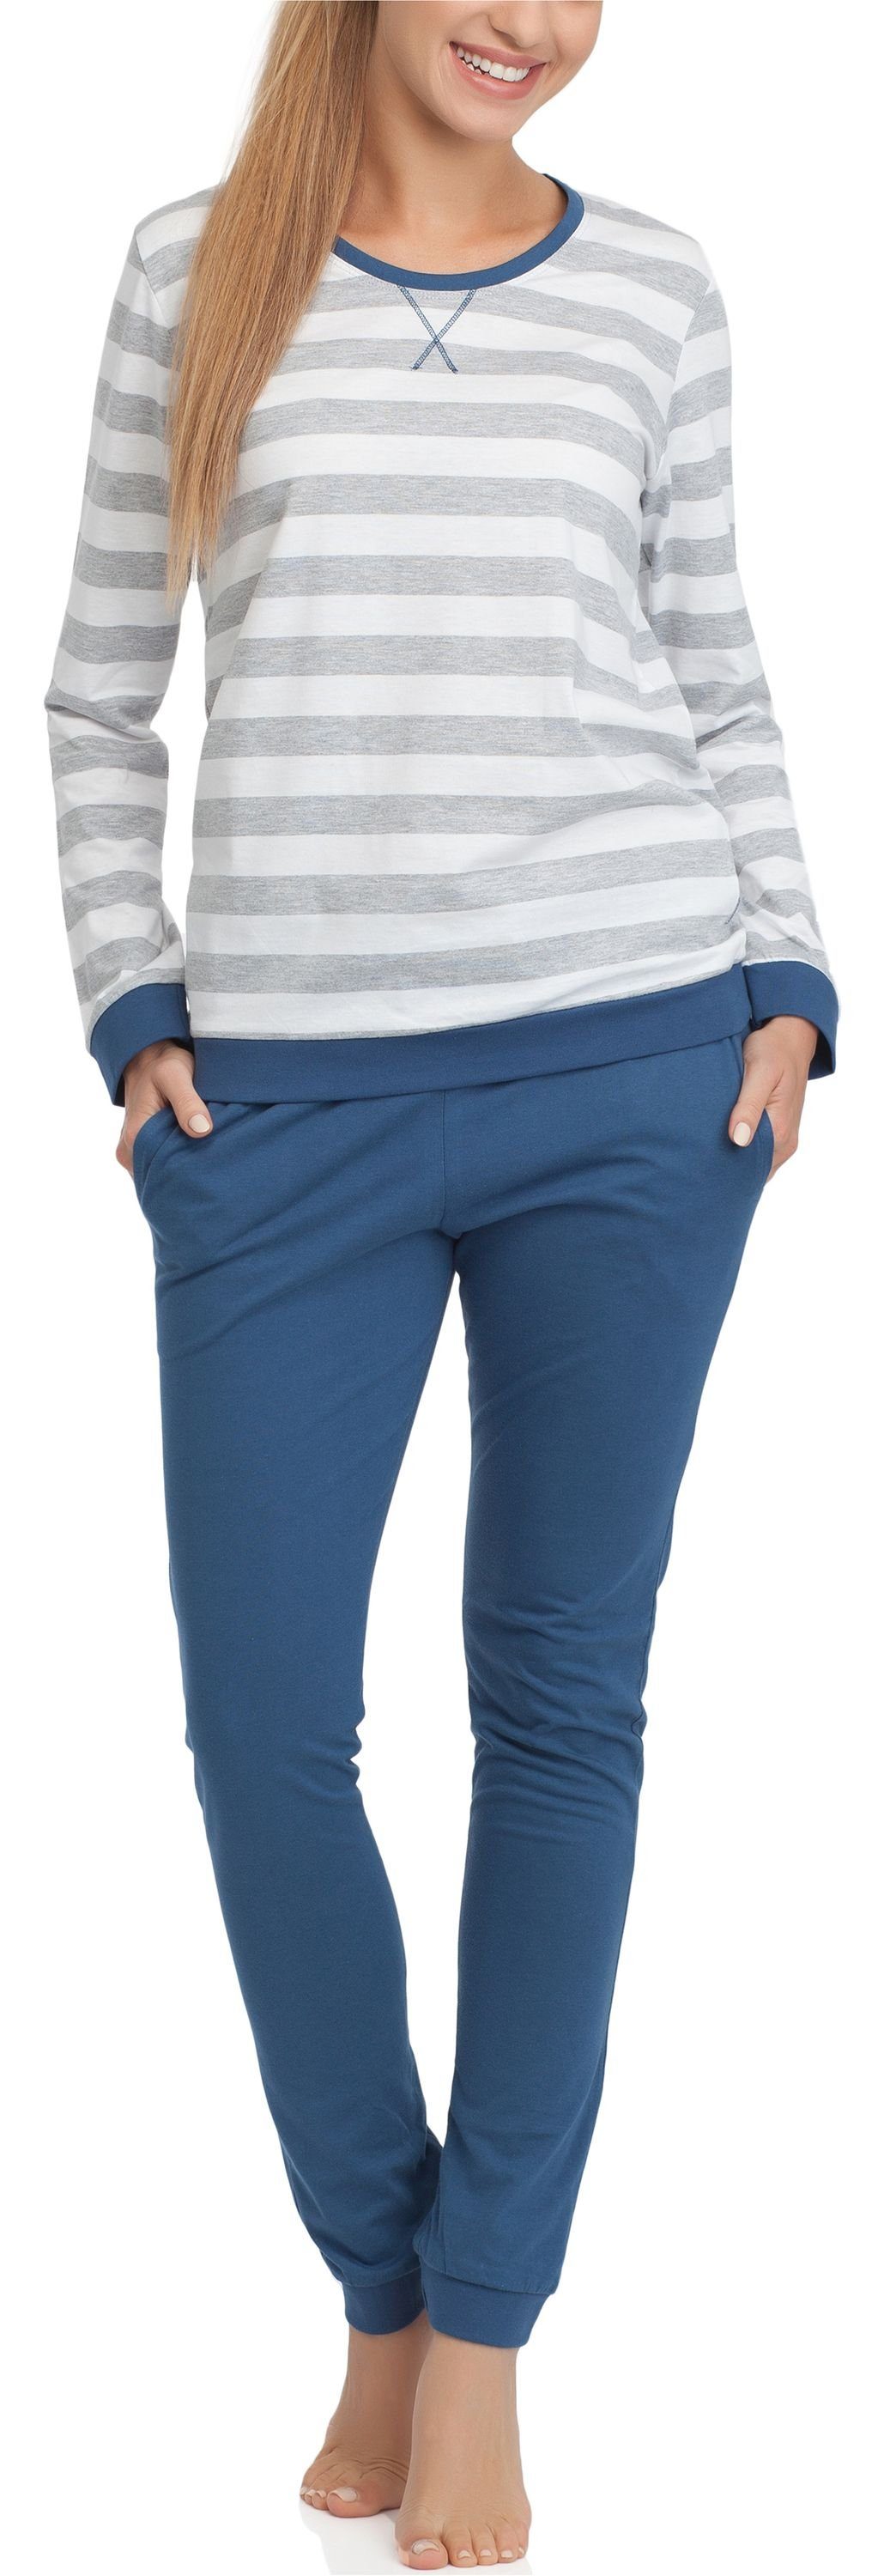 Schlafanzug Jungen Jeans Schlafanzug CR-789-Worms Cornette